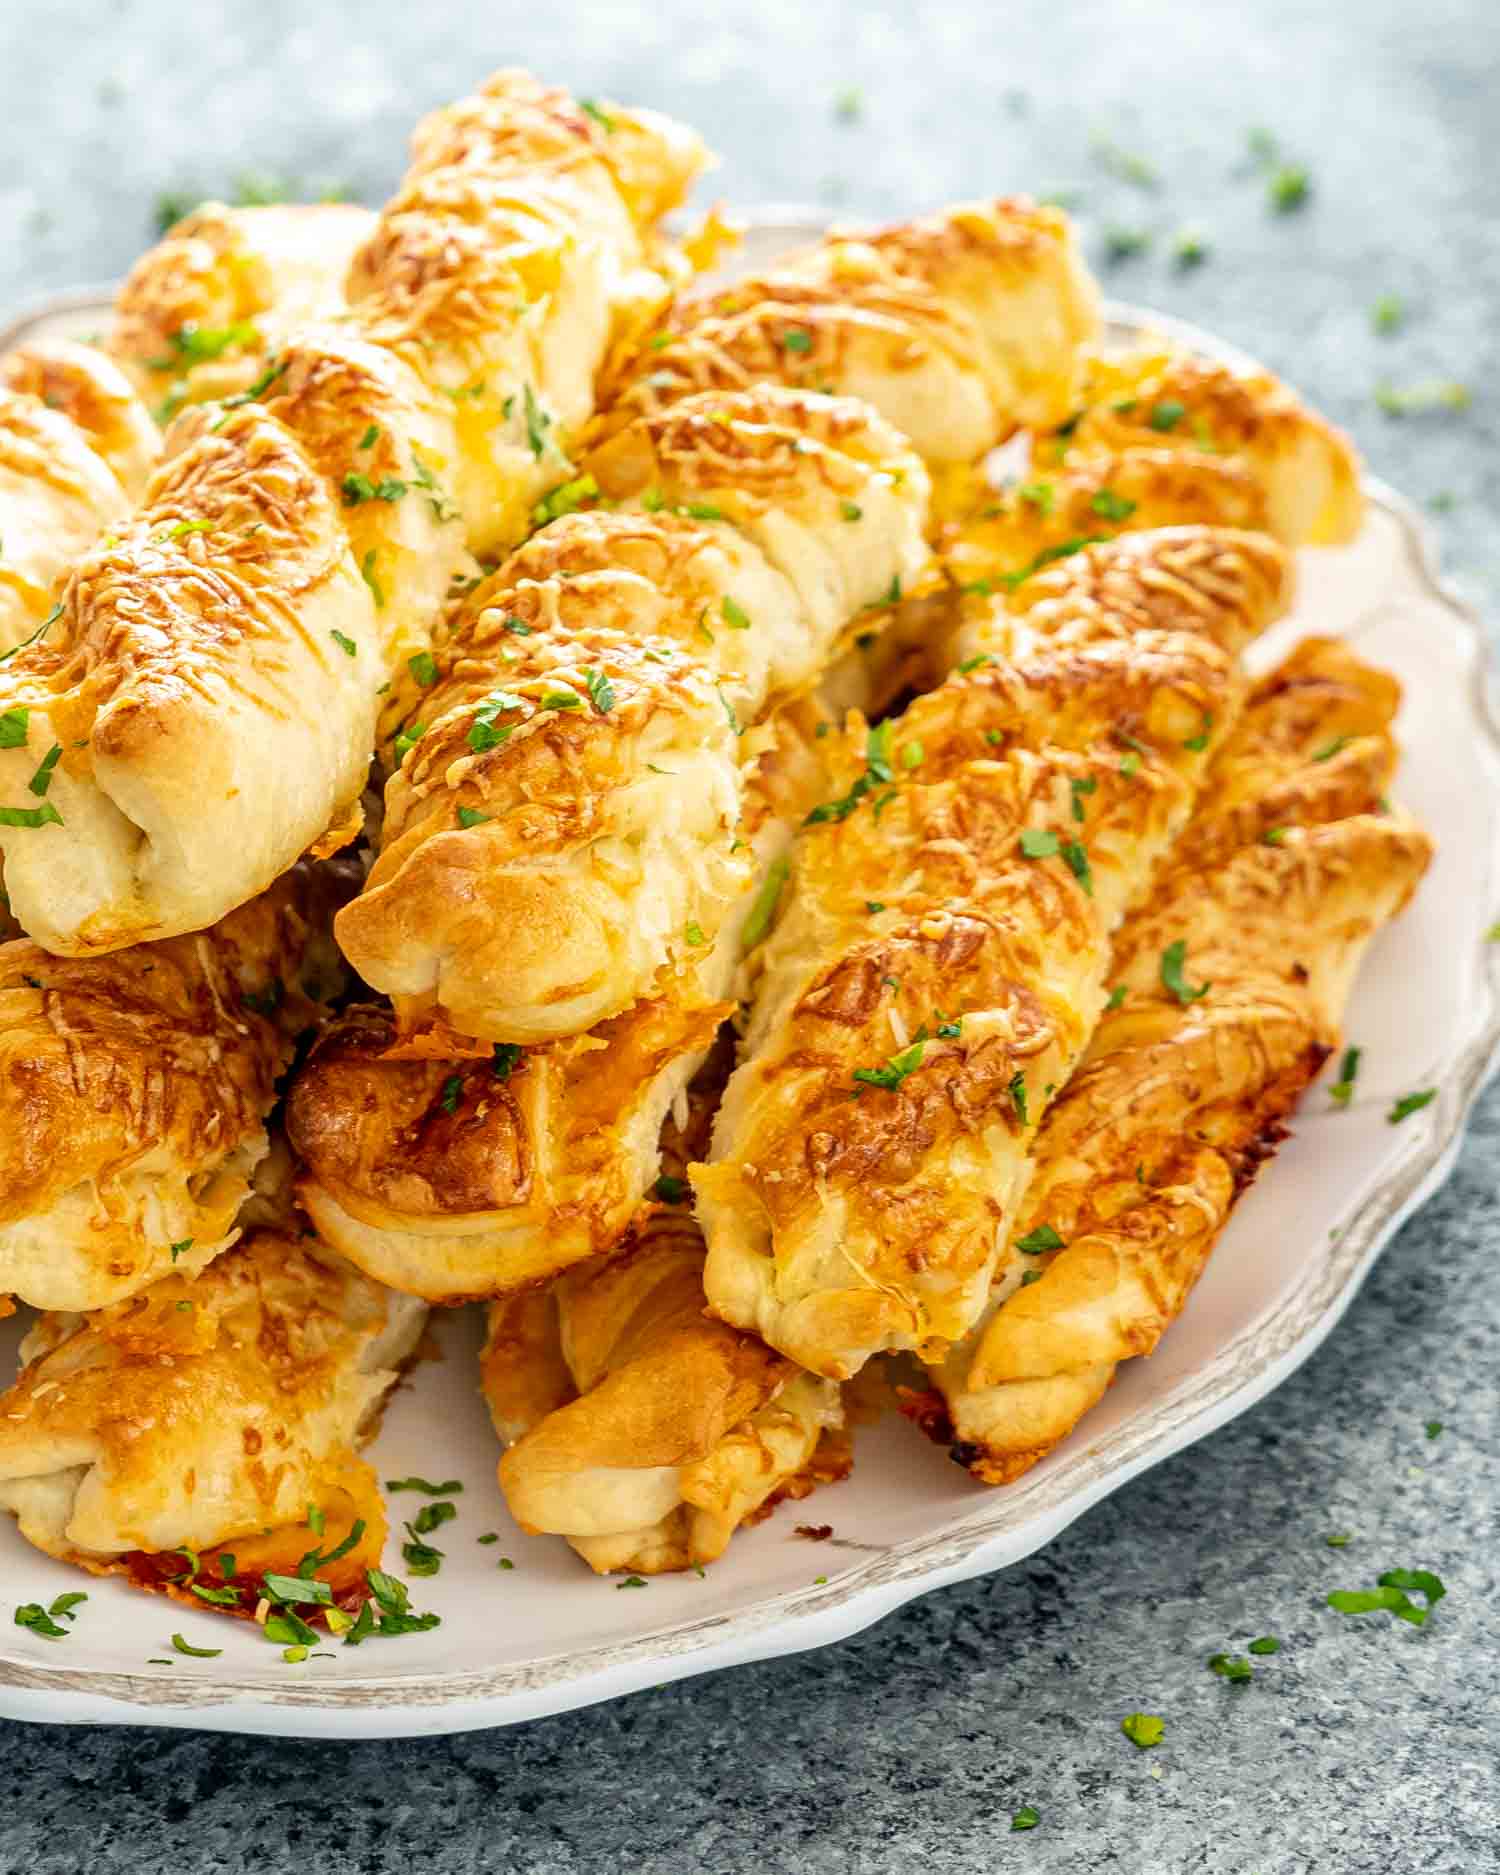 freshly baked cheesy breadsticks on a serving platter.